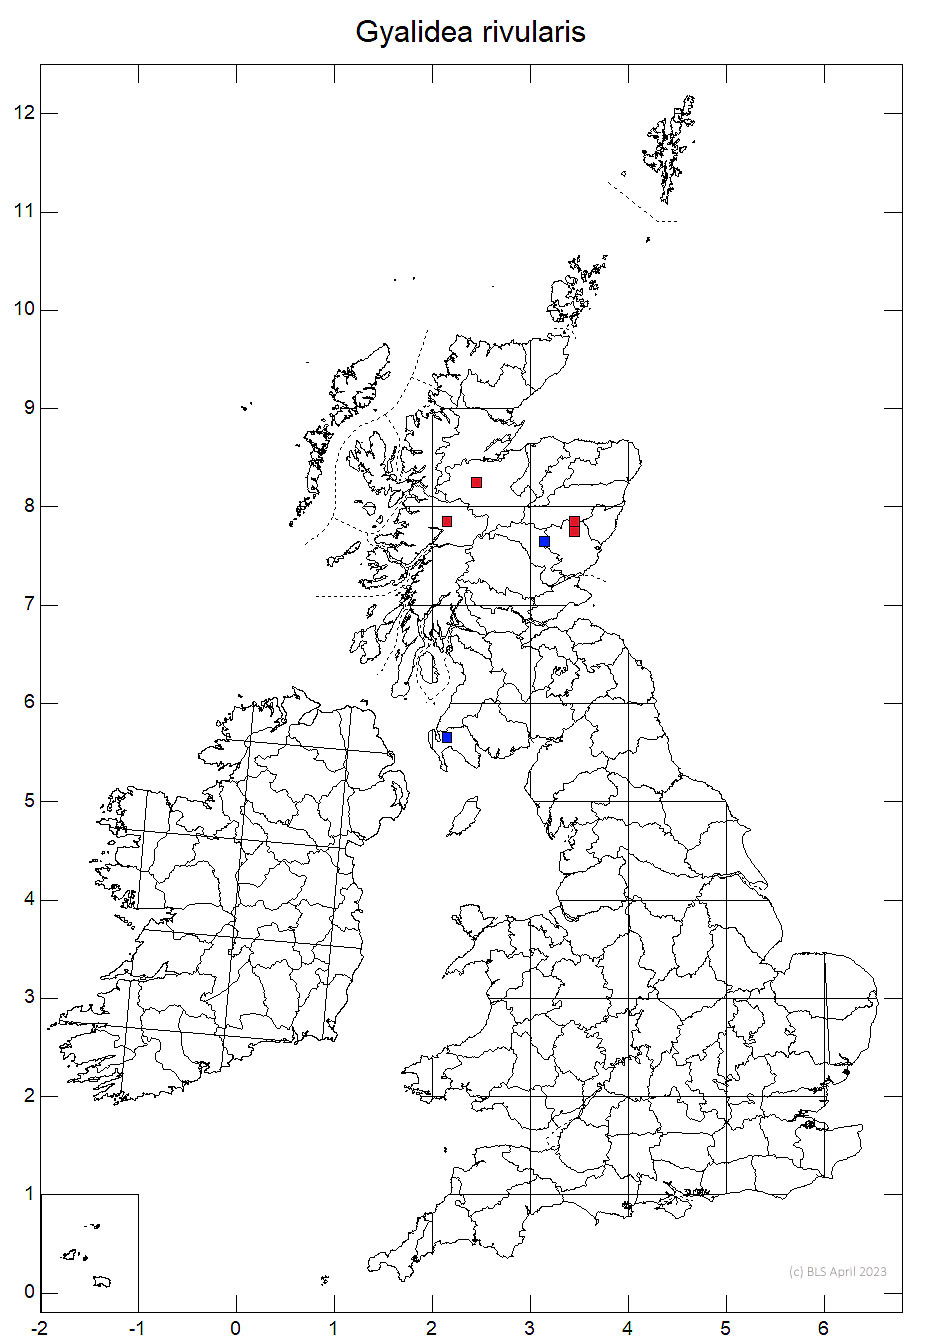 Gyalidea rivularis 10km sq distribution map